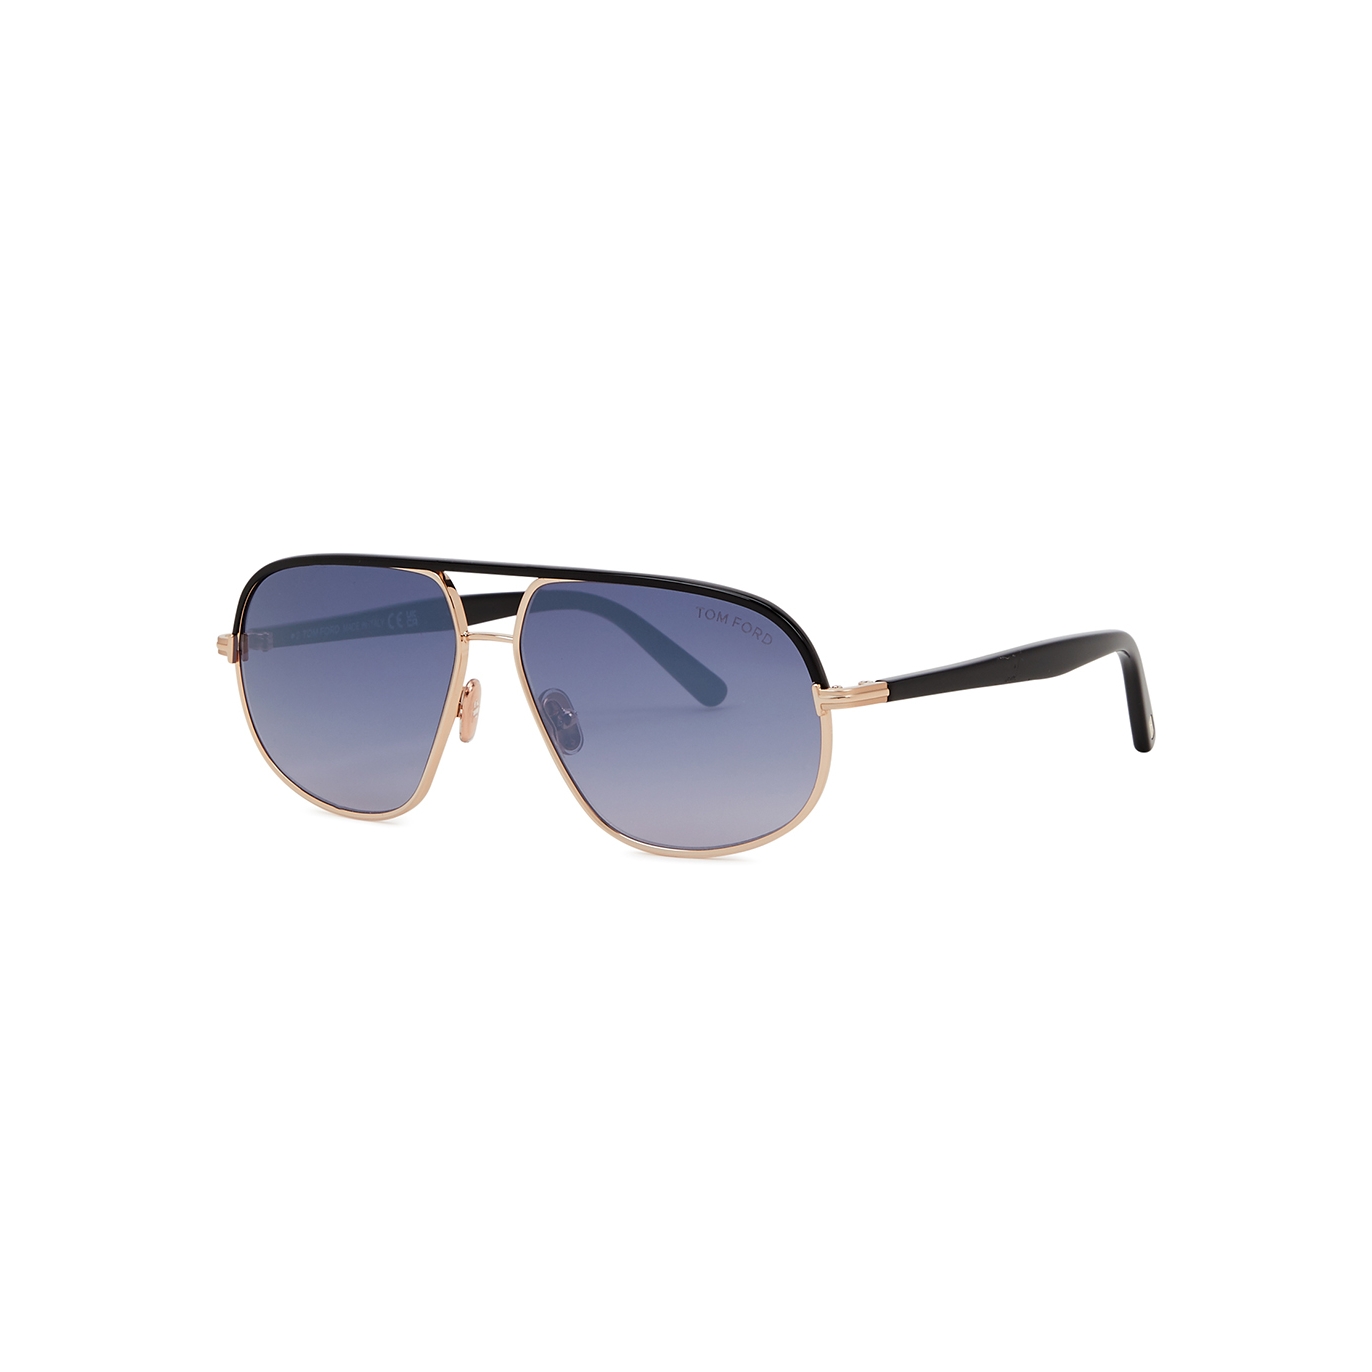 TOM FORD Men's THOR Square Sunglasses | Smart Closet